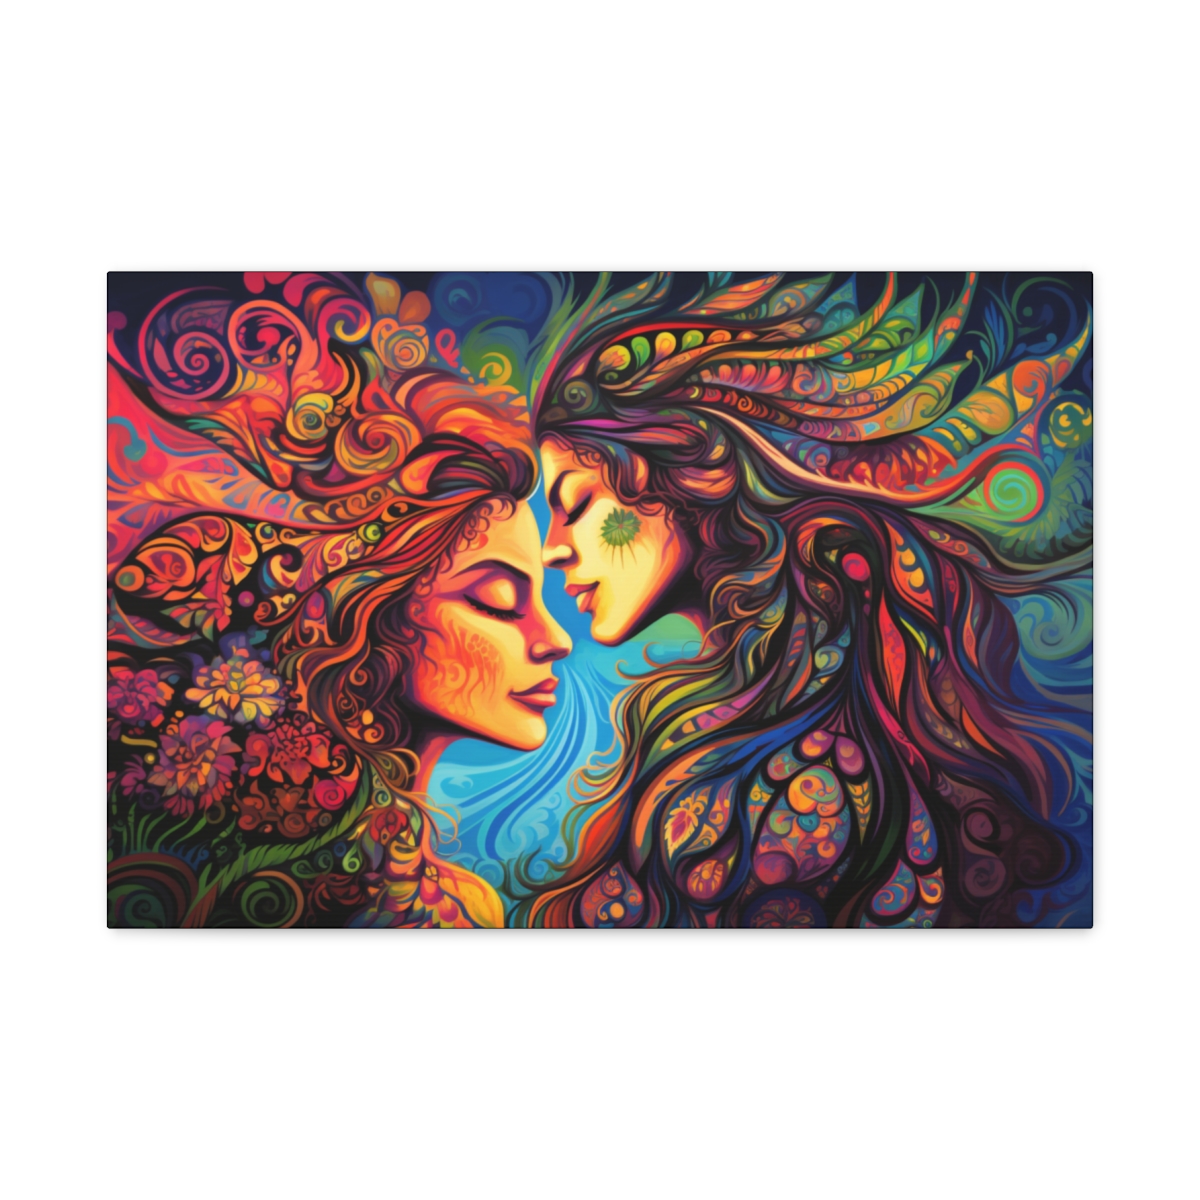 Hippie Trippy Love Art: Boundless Love